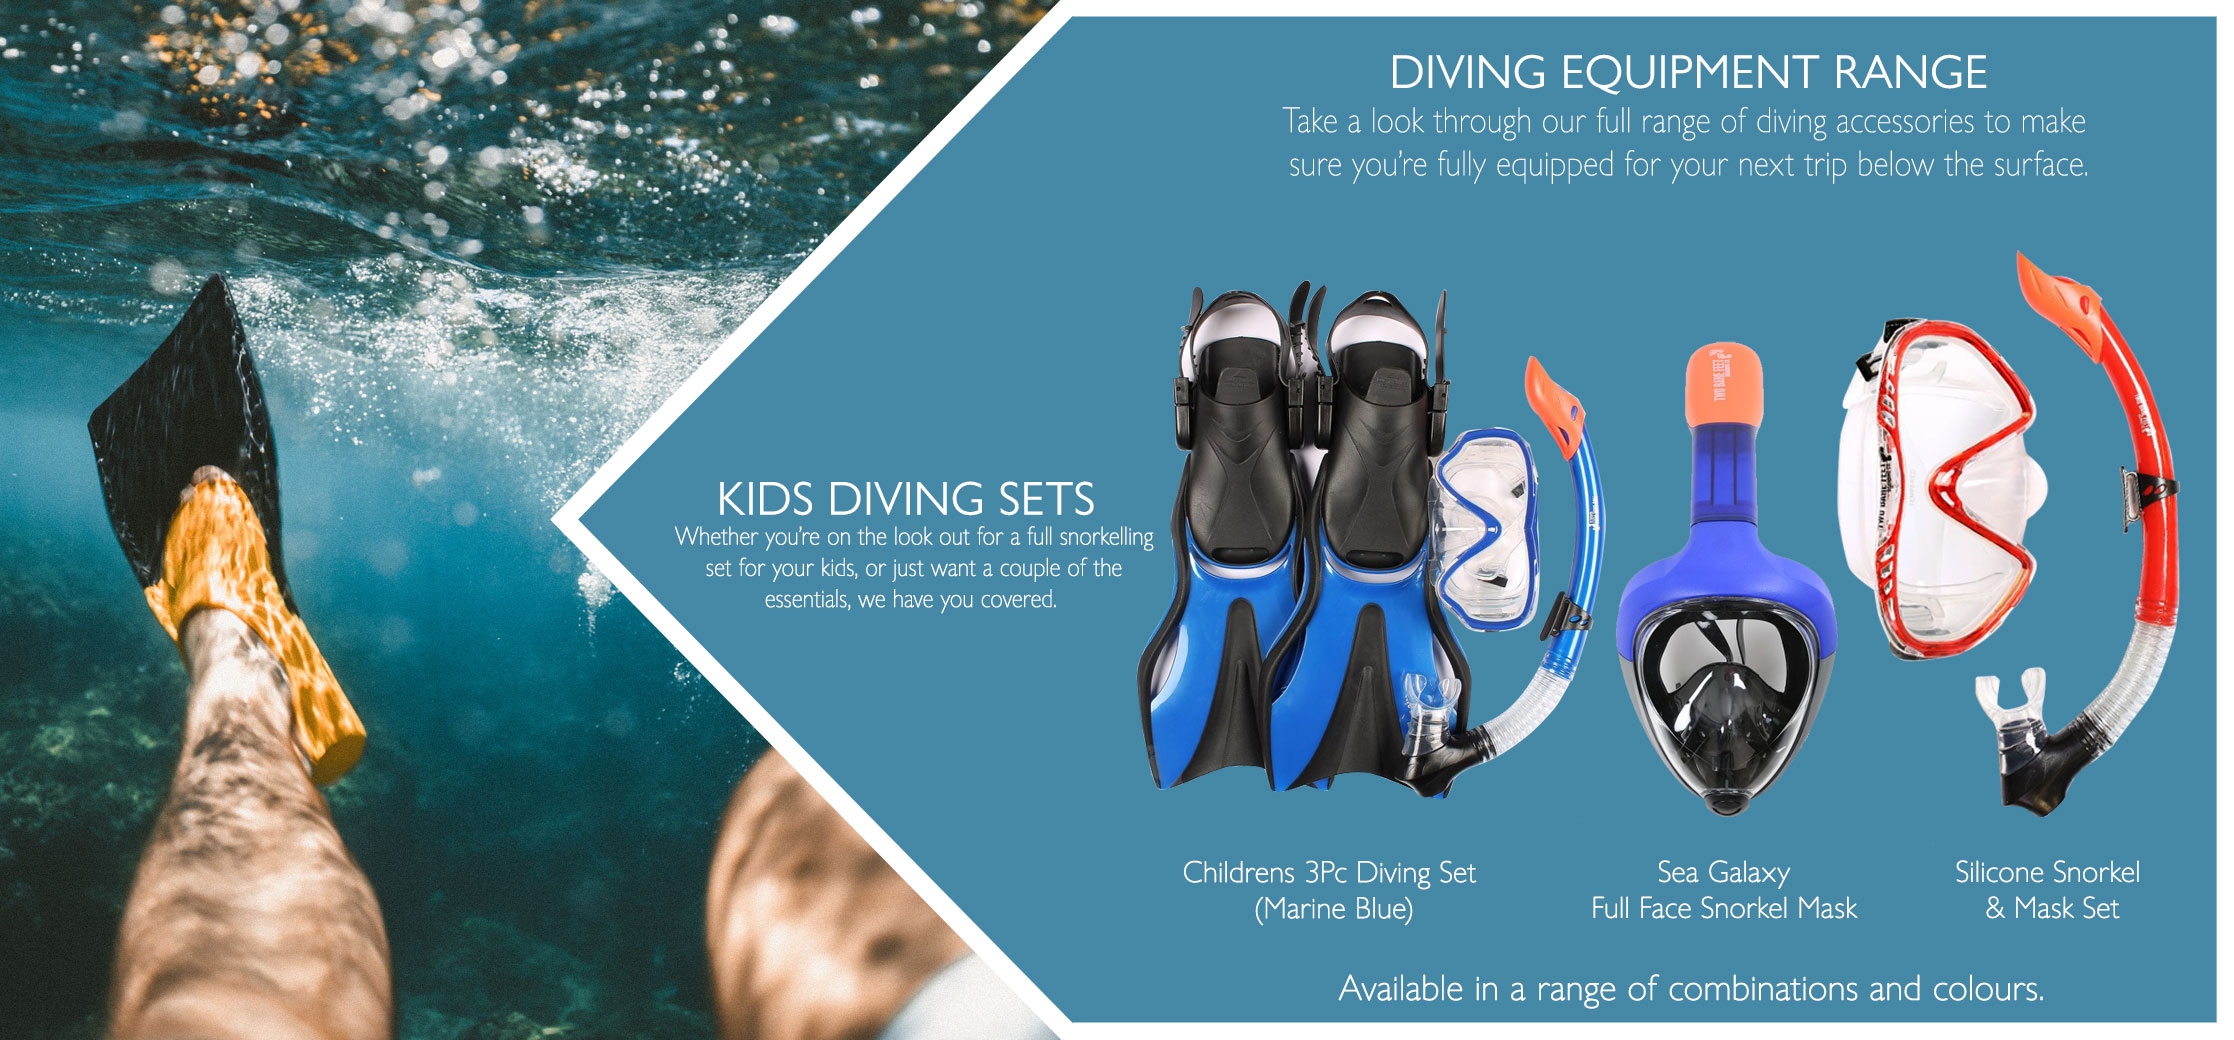 Kids diving sets variations